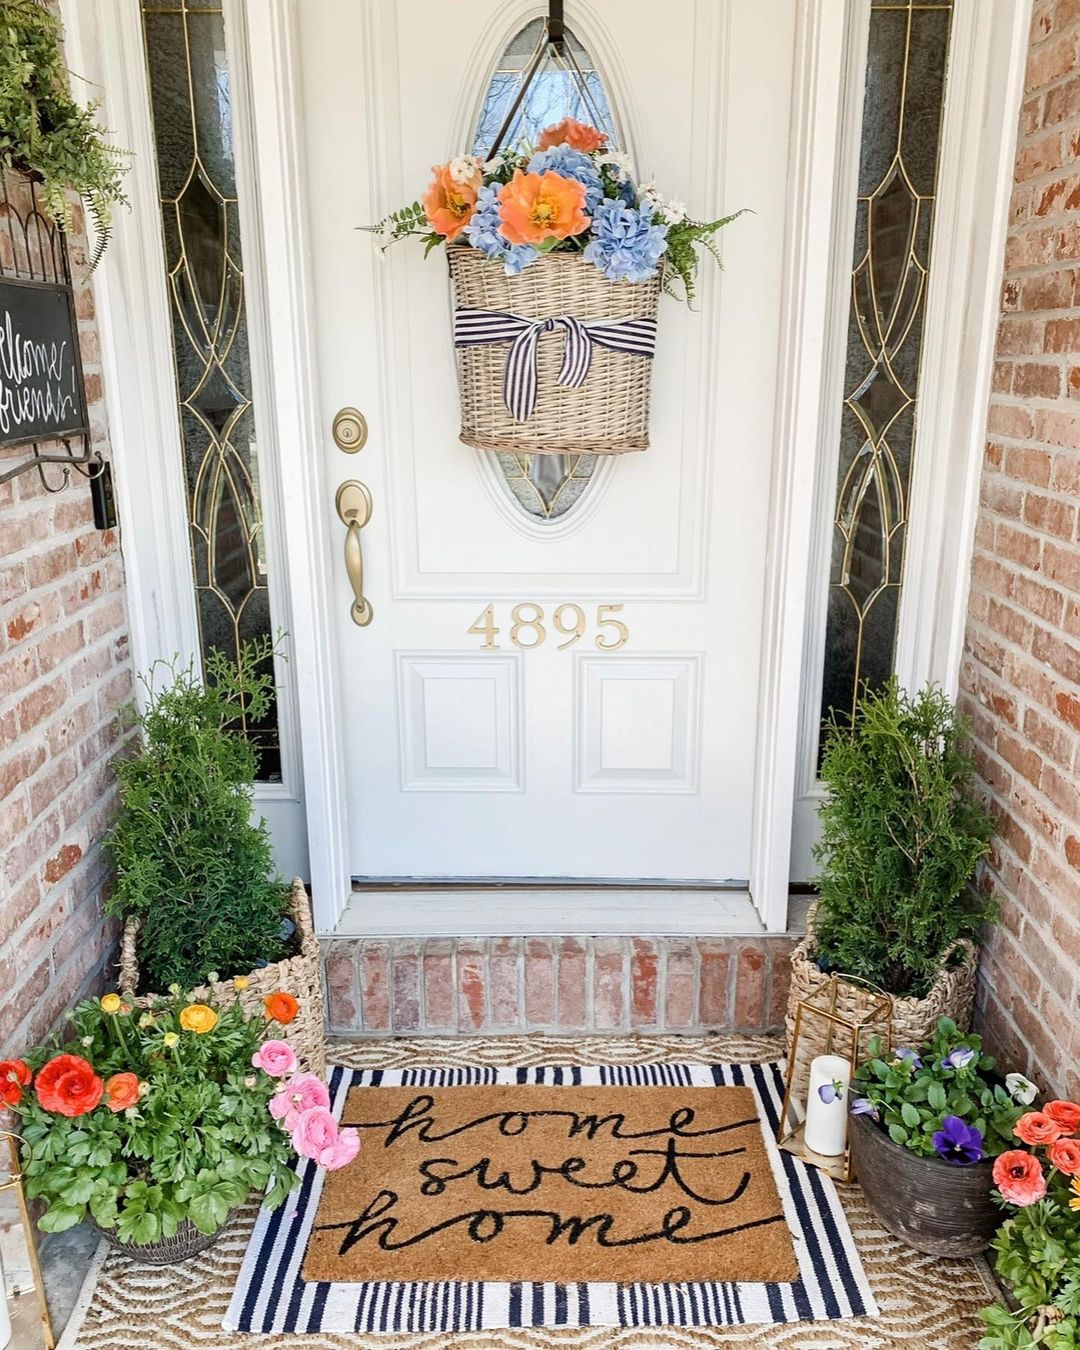 Colorful Spring Floral Door Basket